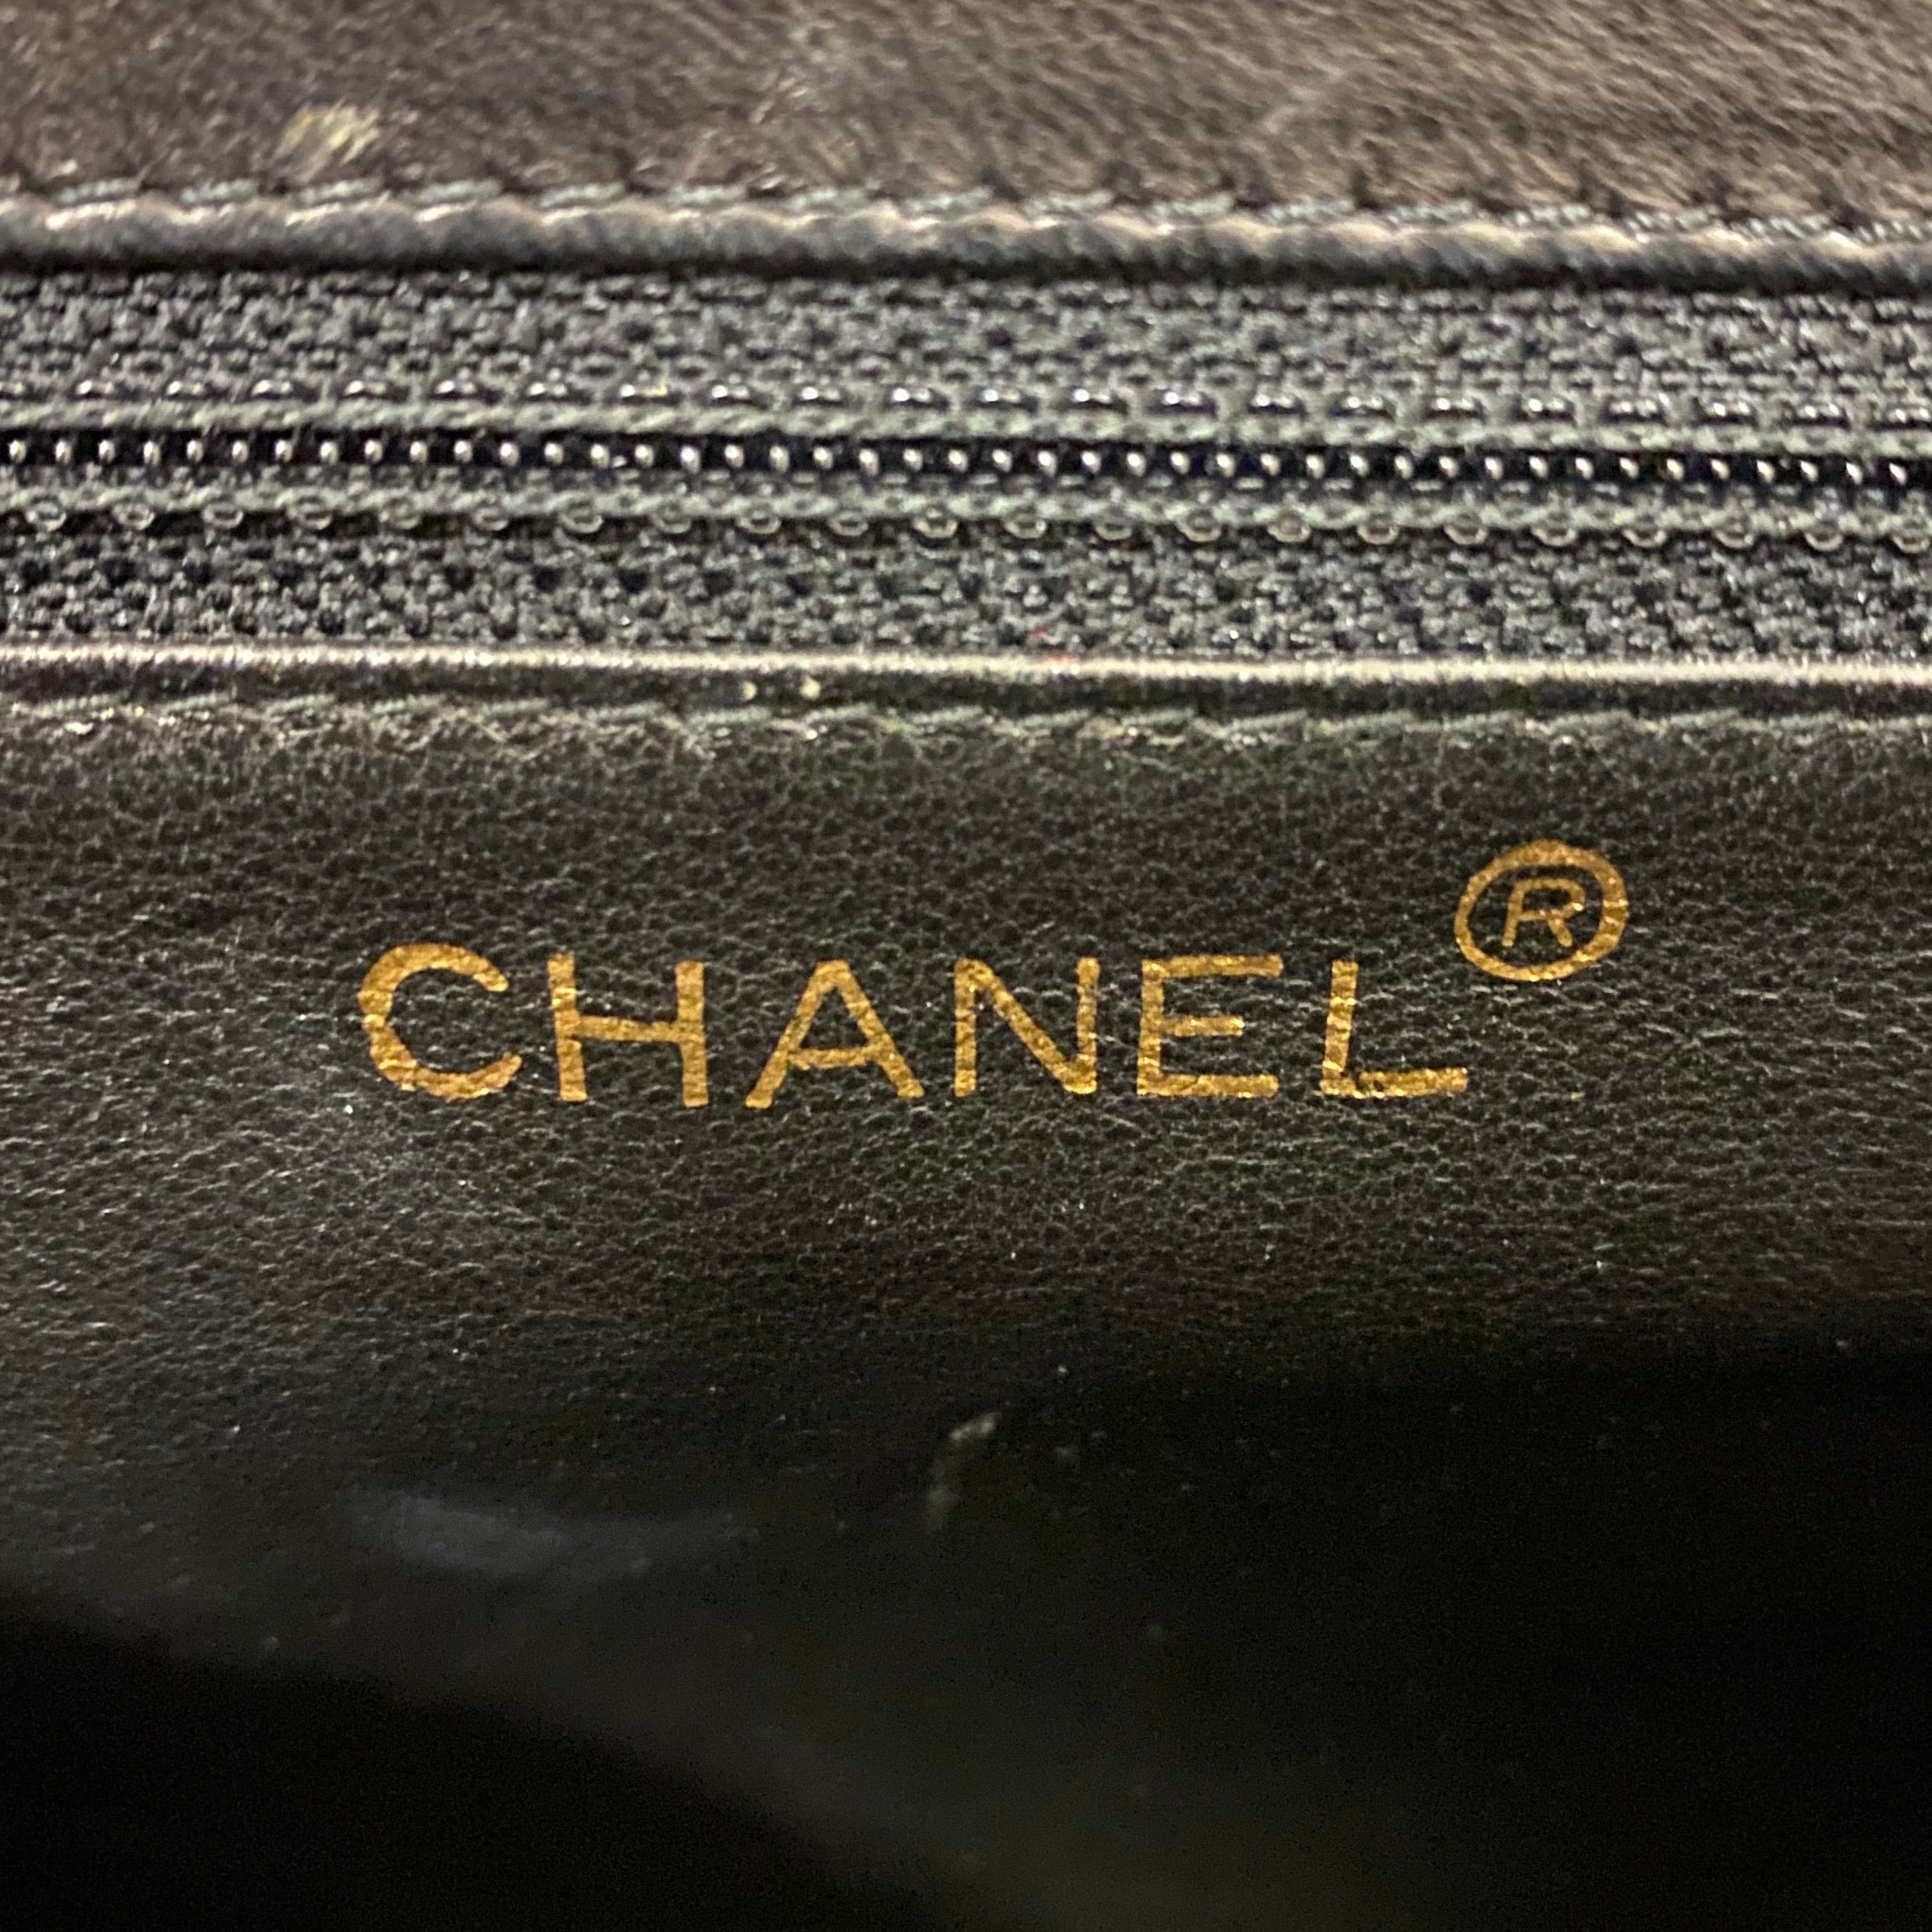 Chanel Black Reverse Quilted Shoulder Bag